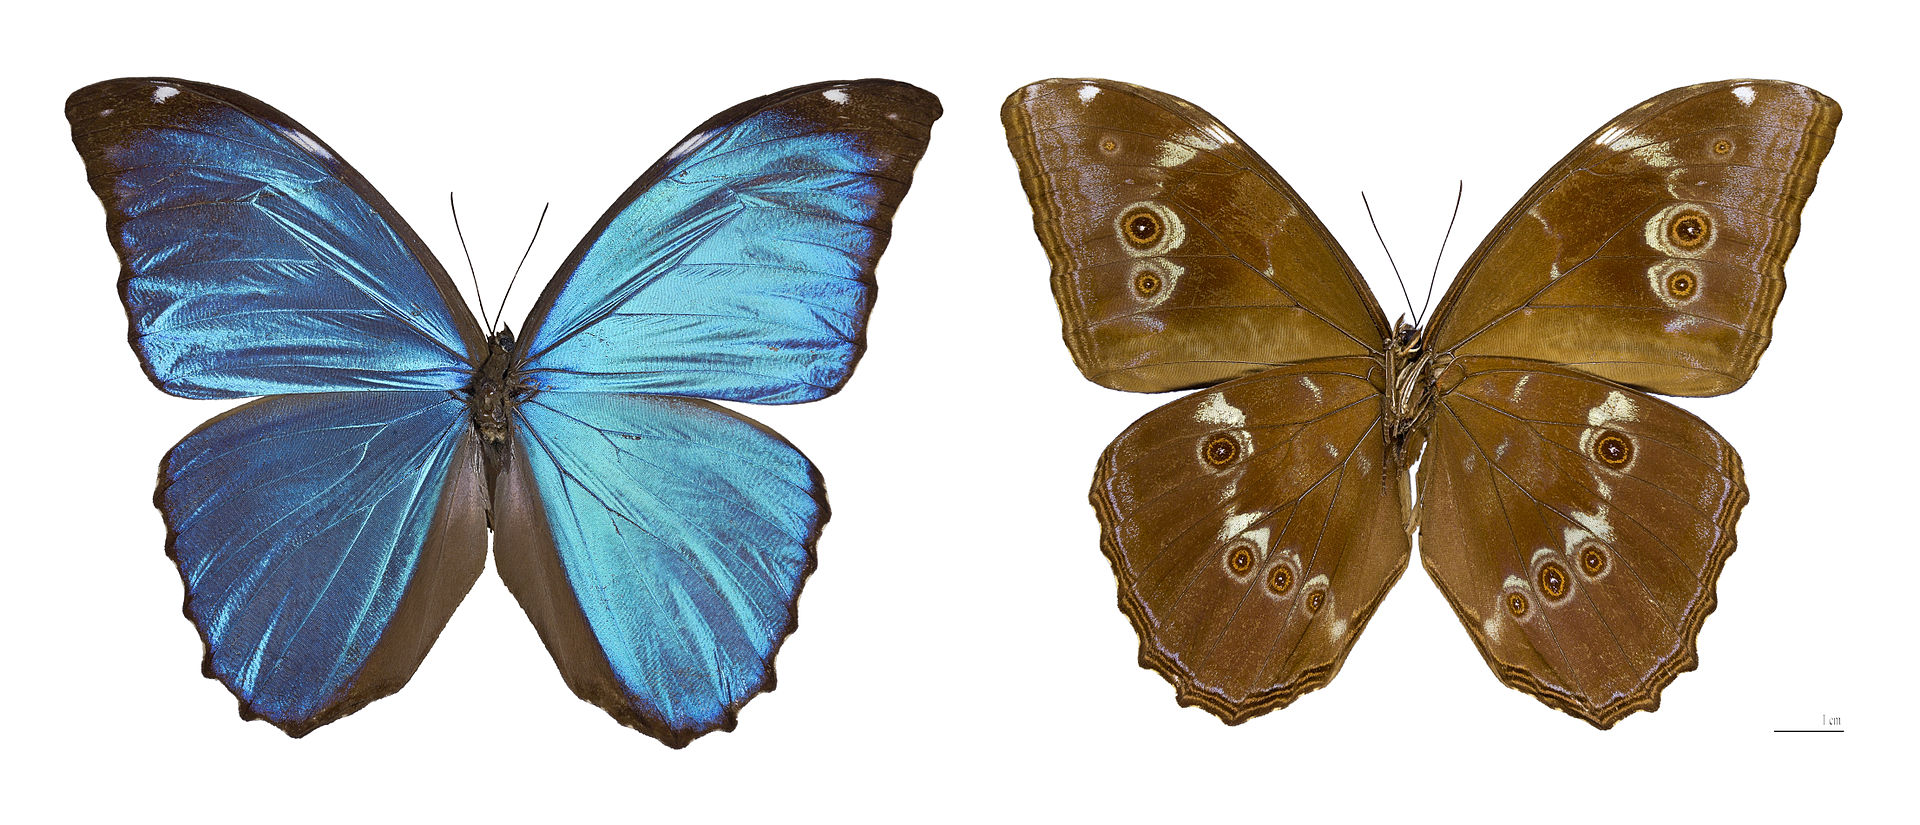 哈布那藍閃蝶(Morphosmelaushuebneri)的正面(左)和背面(右)